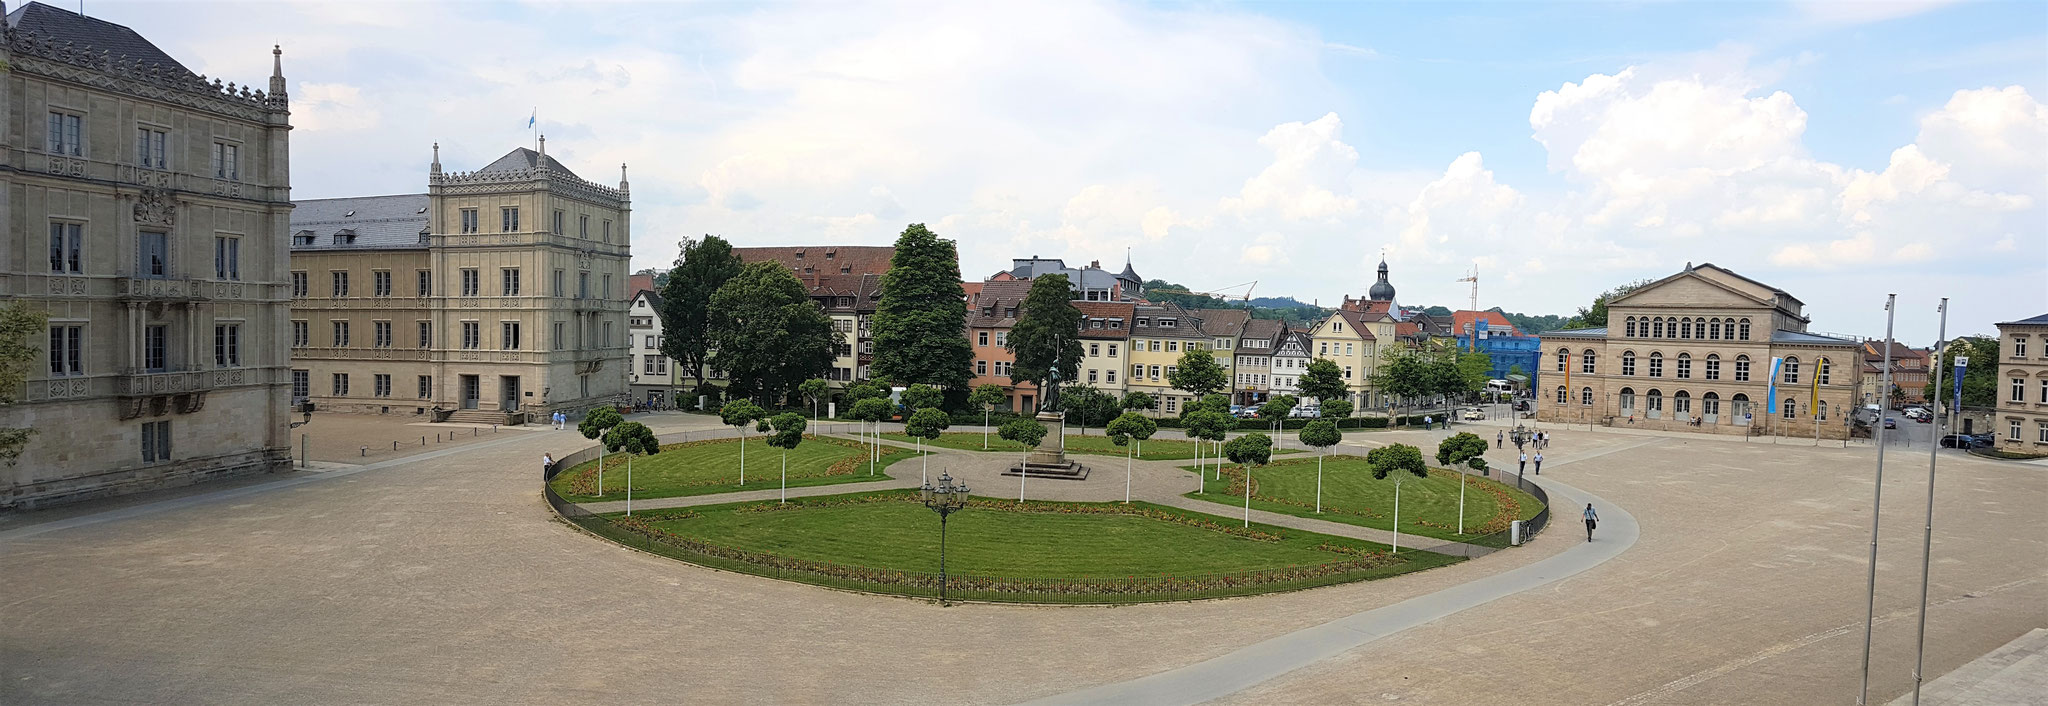 Blick auf den Schlossplatz